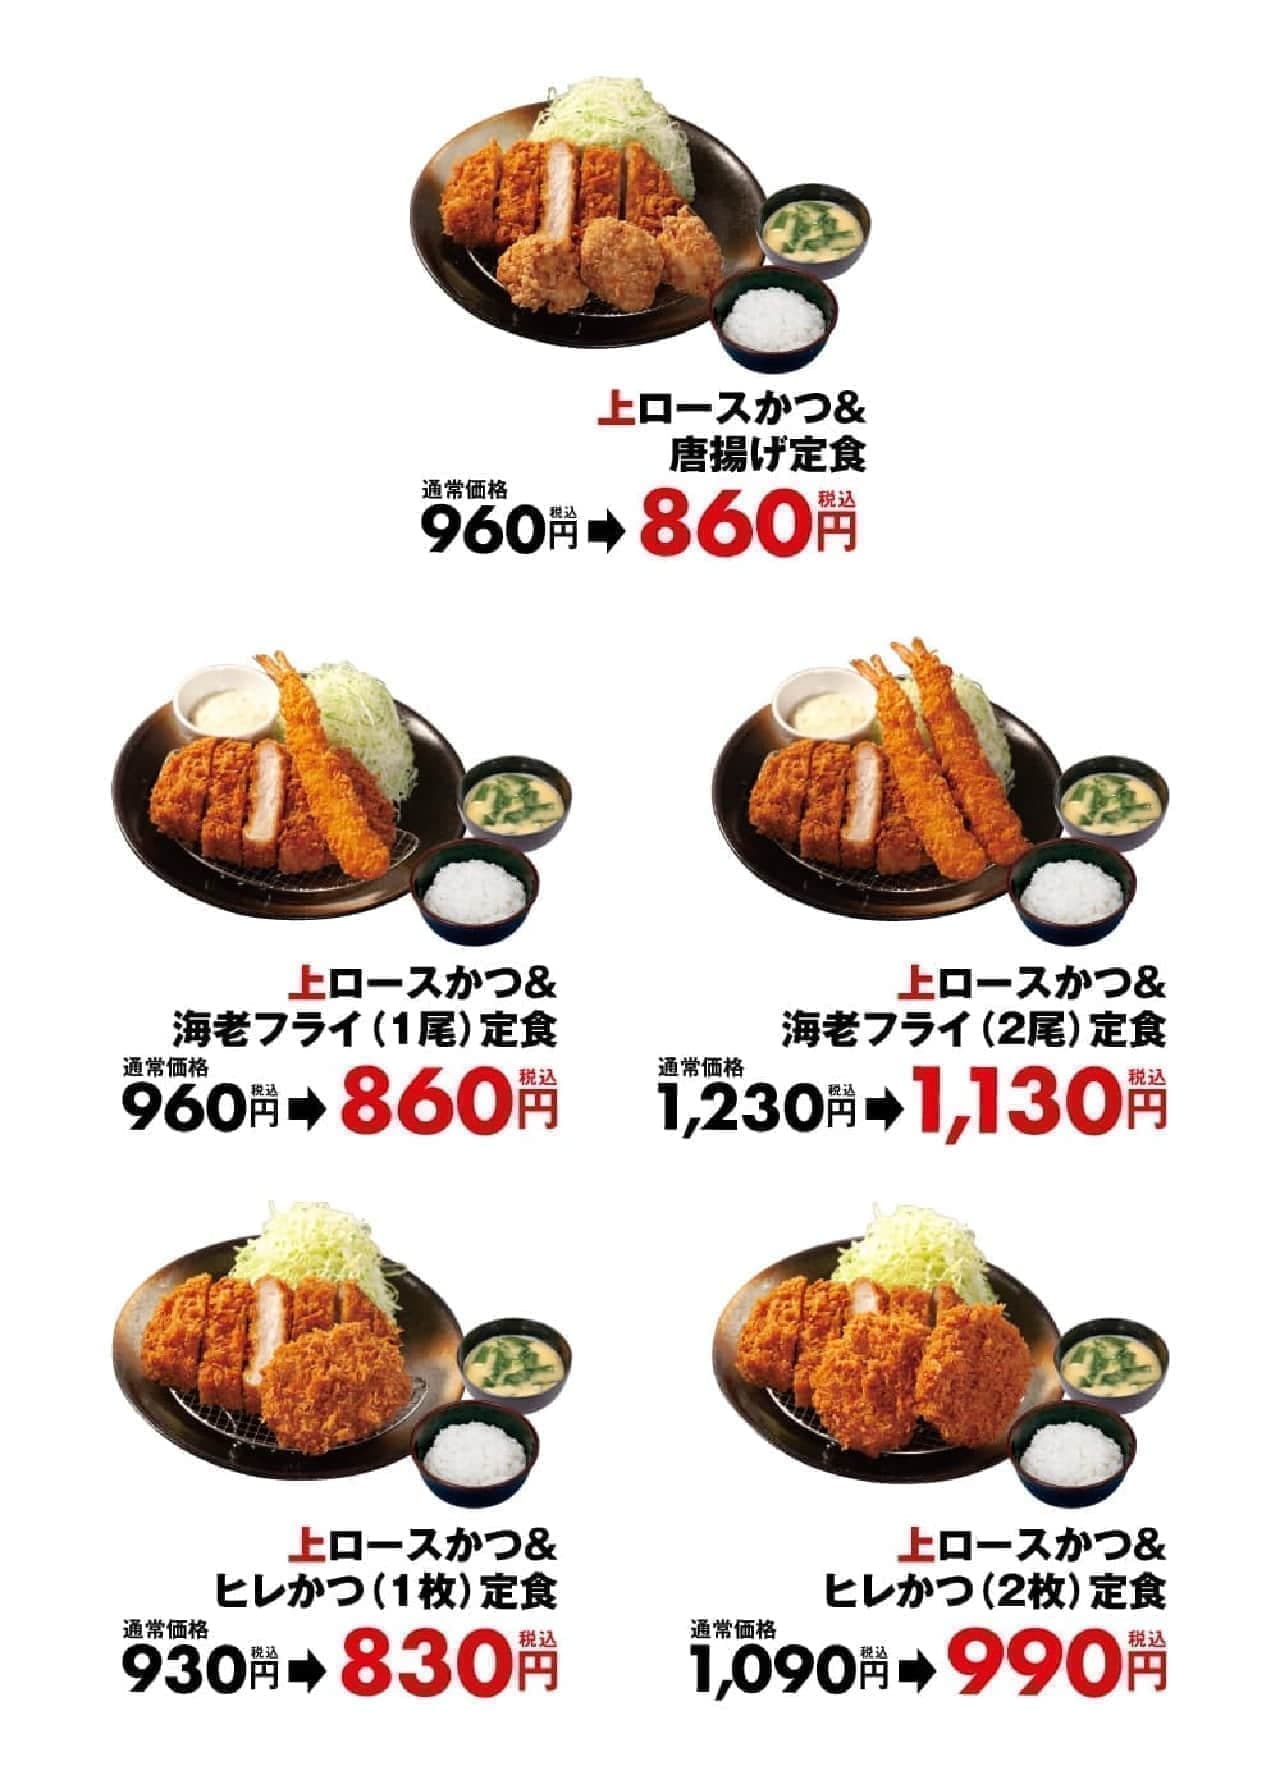 Matsunoya and Matsunoya "100 yen off sale for the top loin cutlet combination".